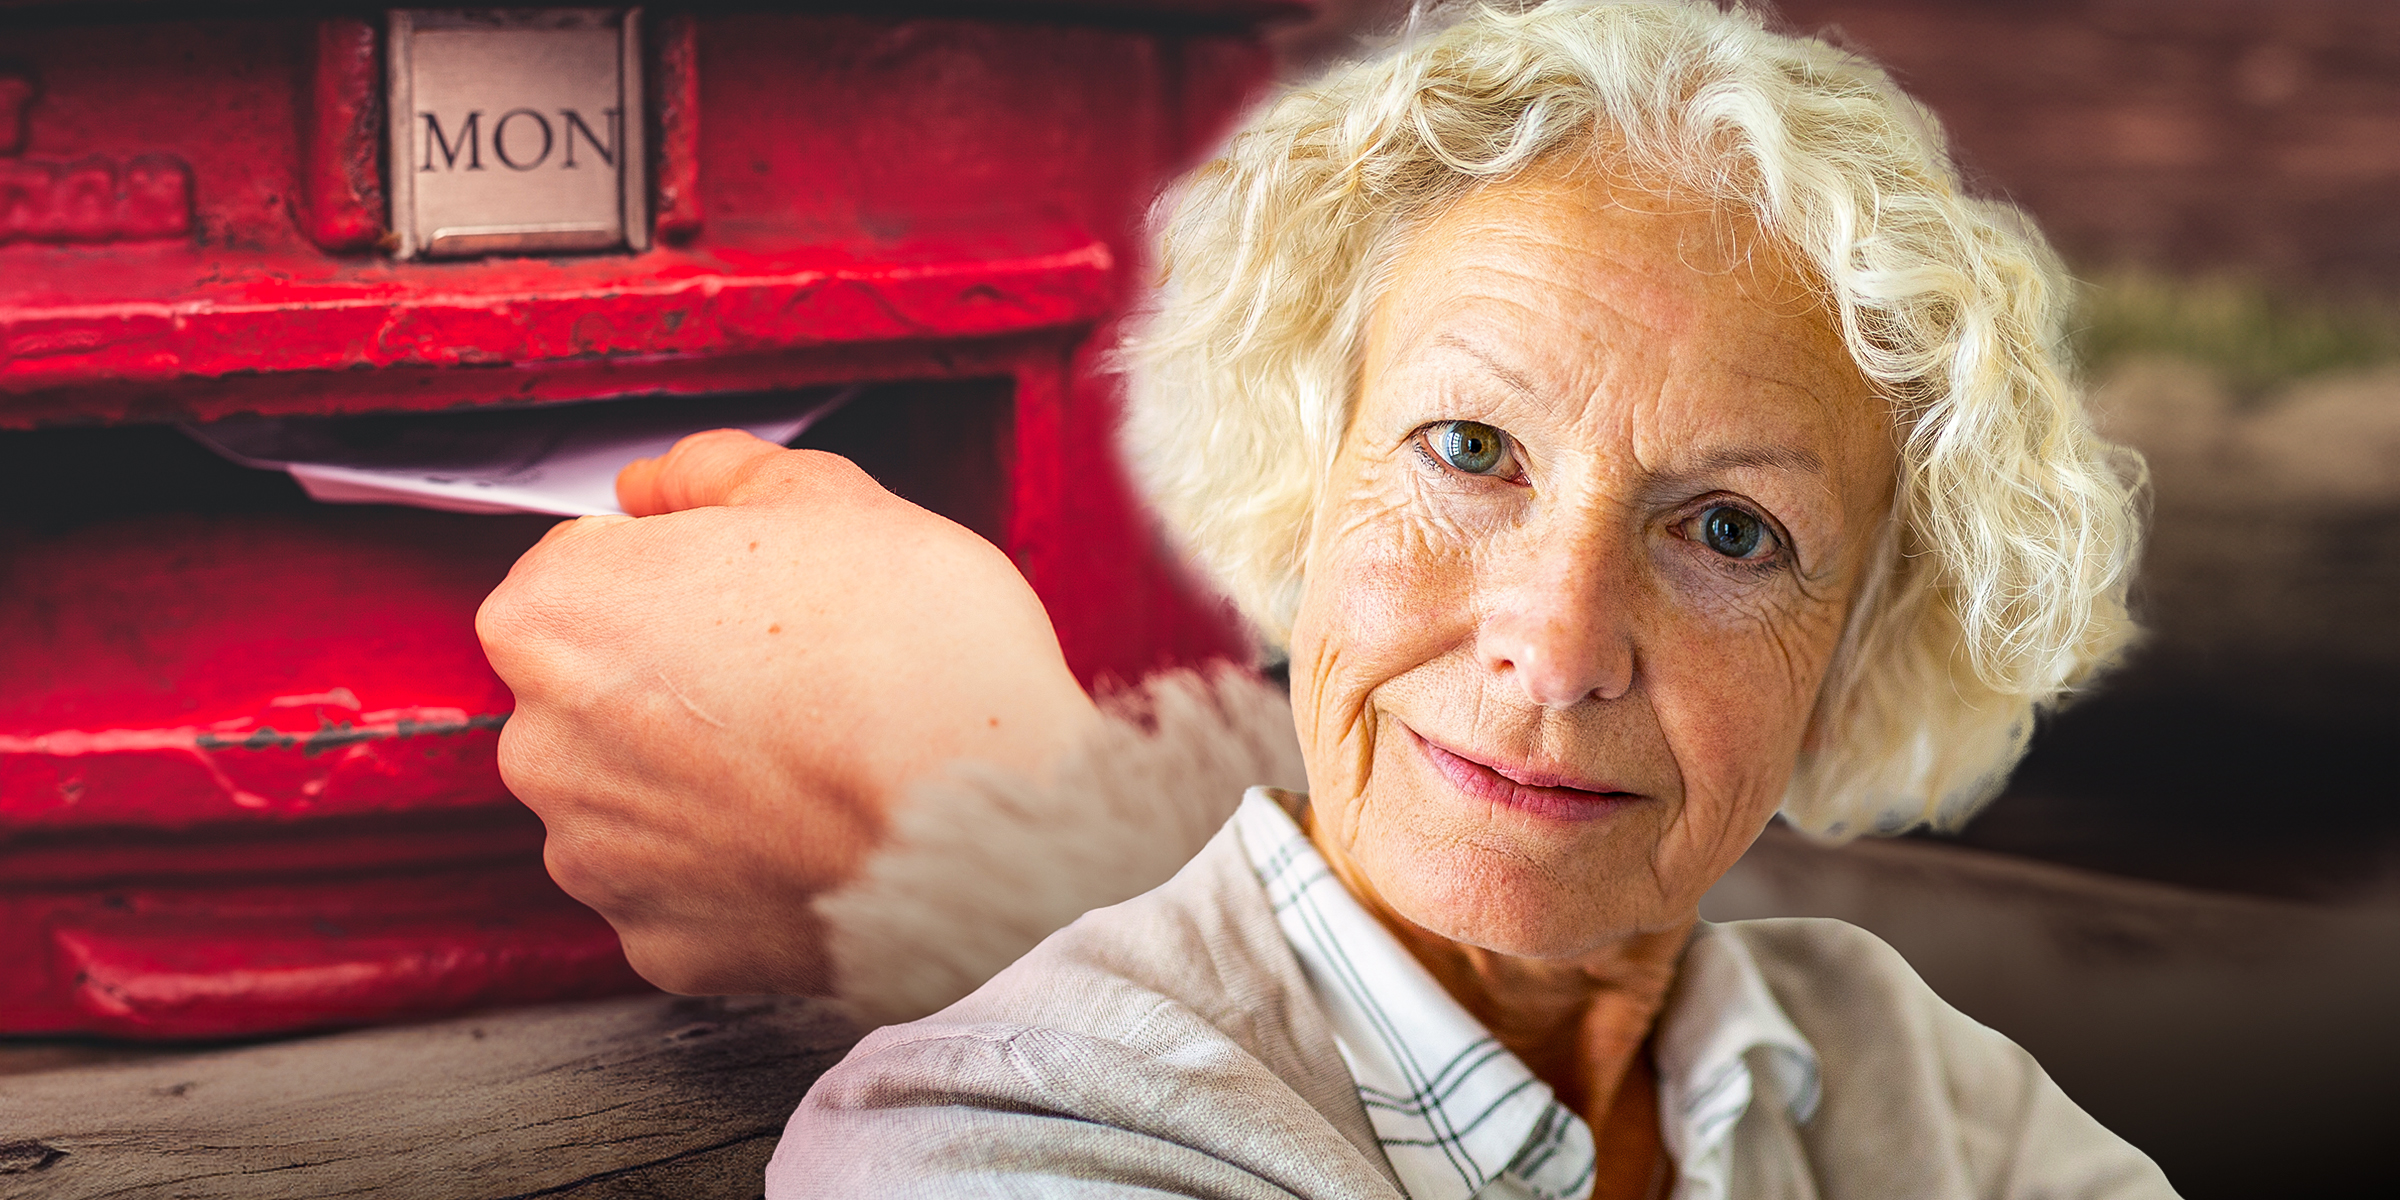 Una persona echando una carta en un buzón | Una mujer mayor sonriente | Fuente: Shutterstock